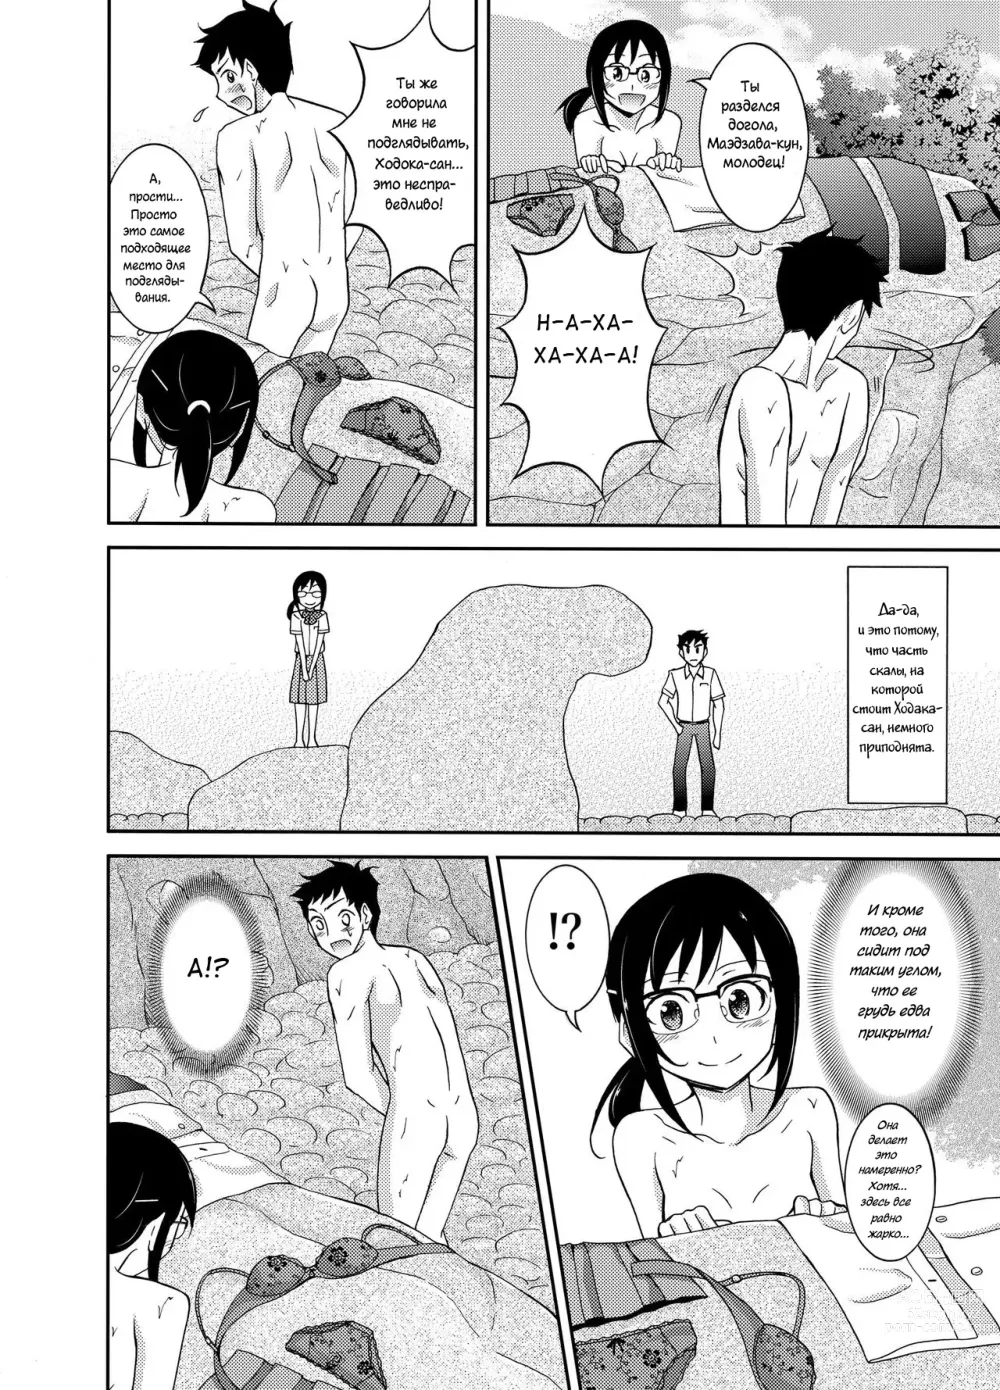 Page 9 of doujinshi Промокшая летняя одежда и то, что последовало дальше